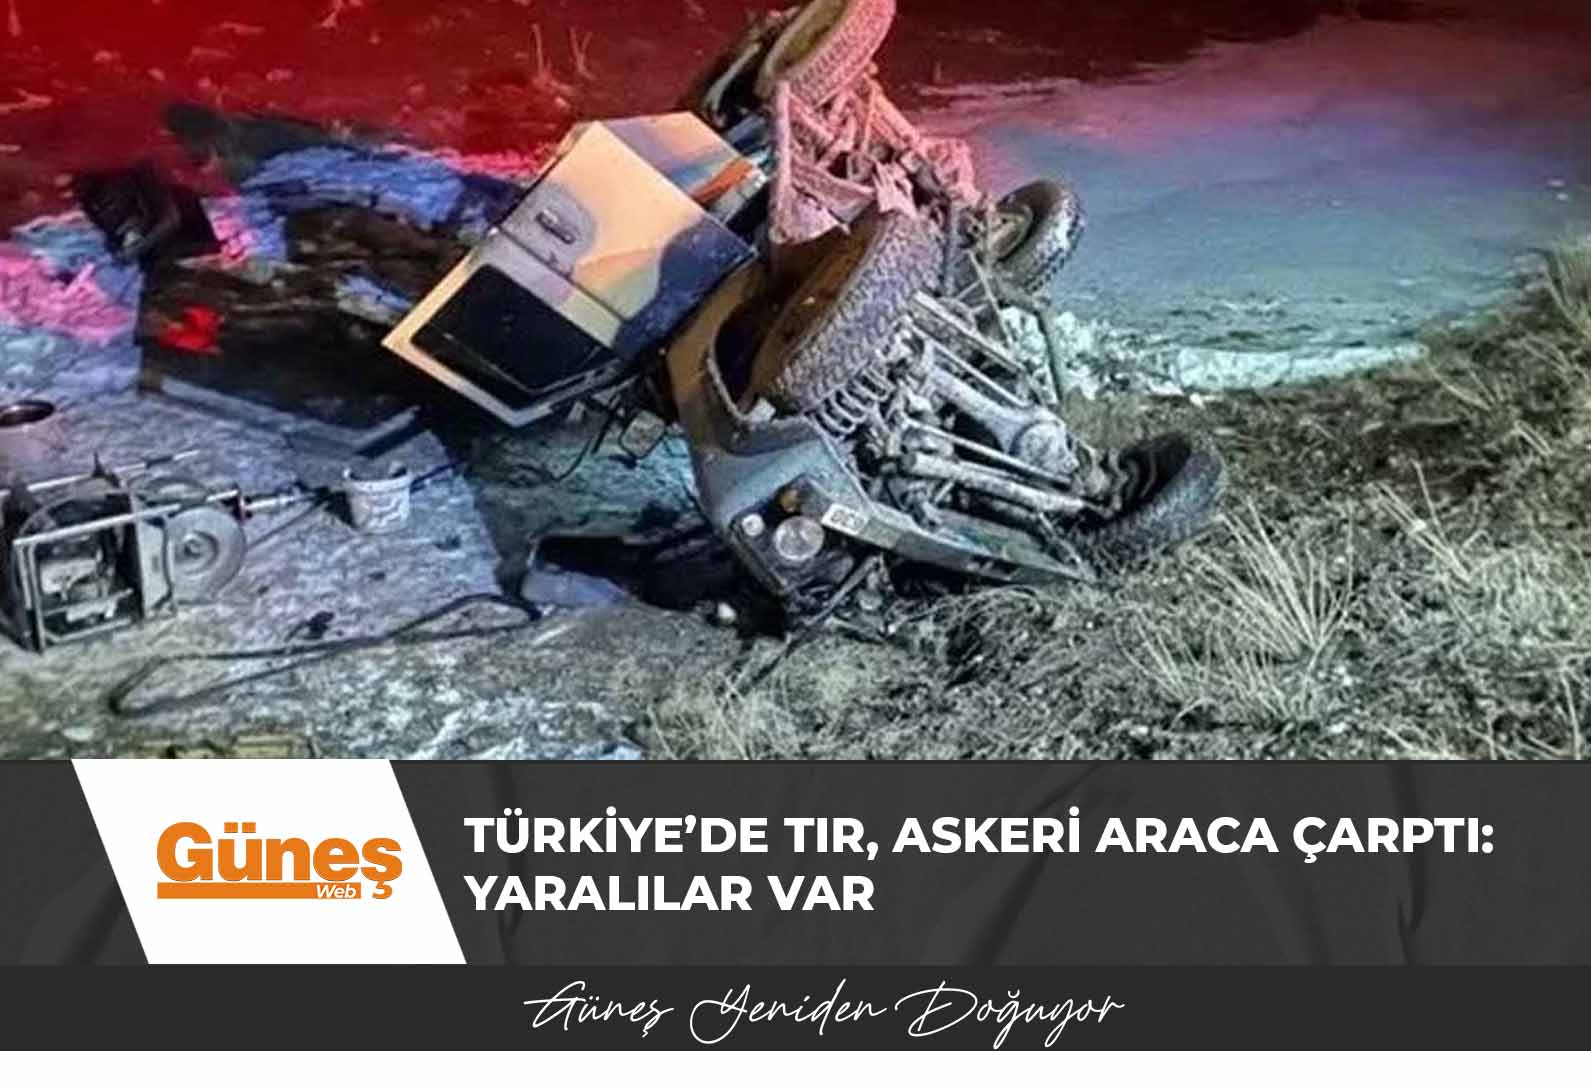 Türkiye’de TIR, askeri araca çarptı: Yaralılar var